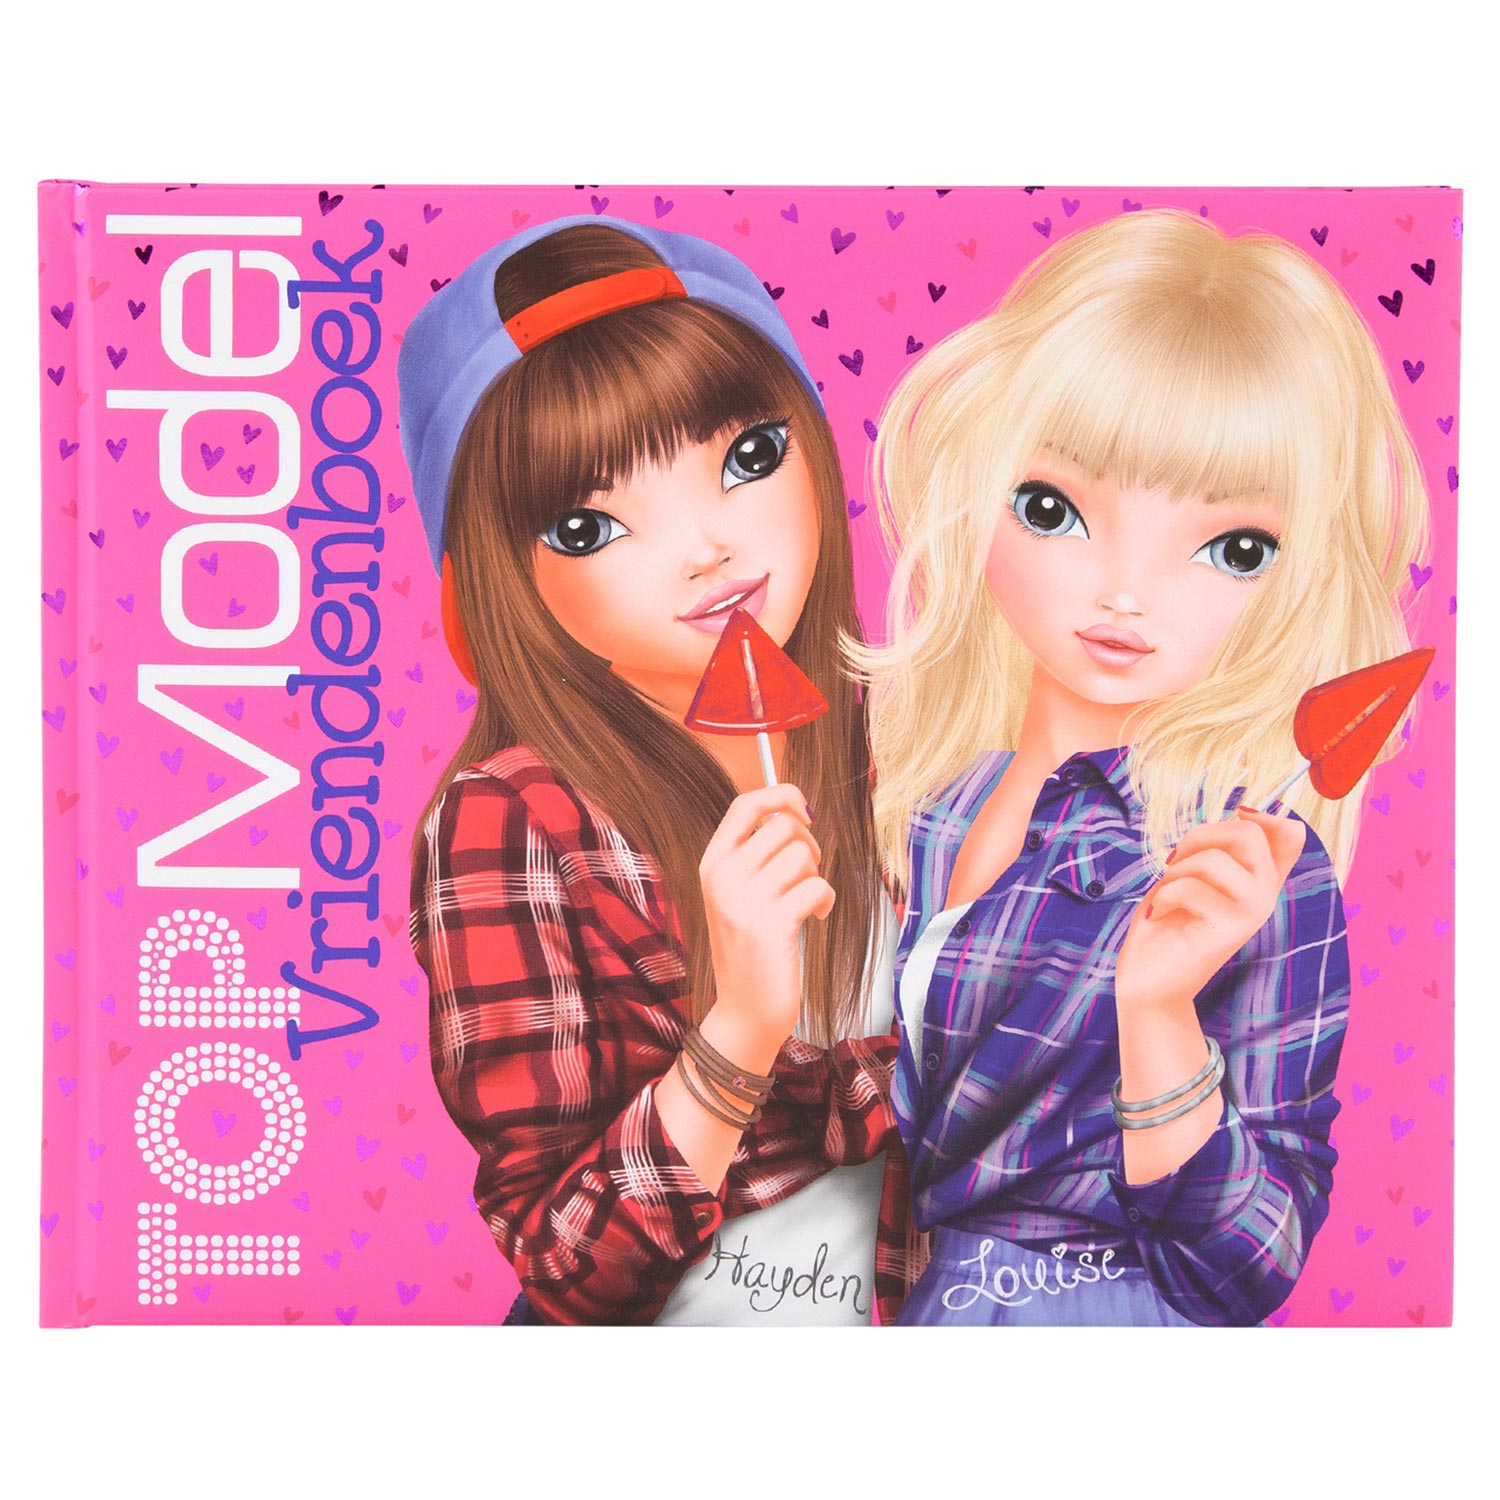 TOPModel Vriendenboek - Hayden & Louise